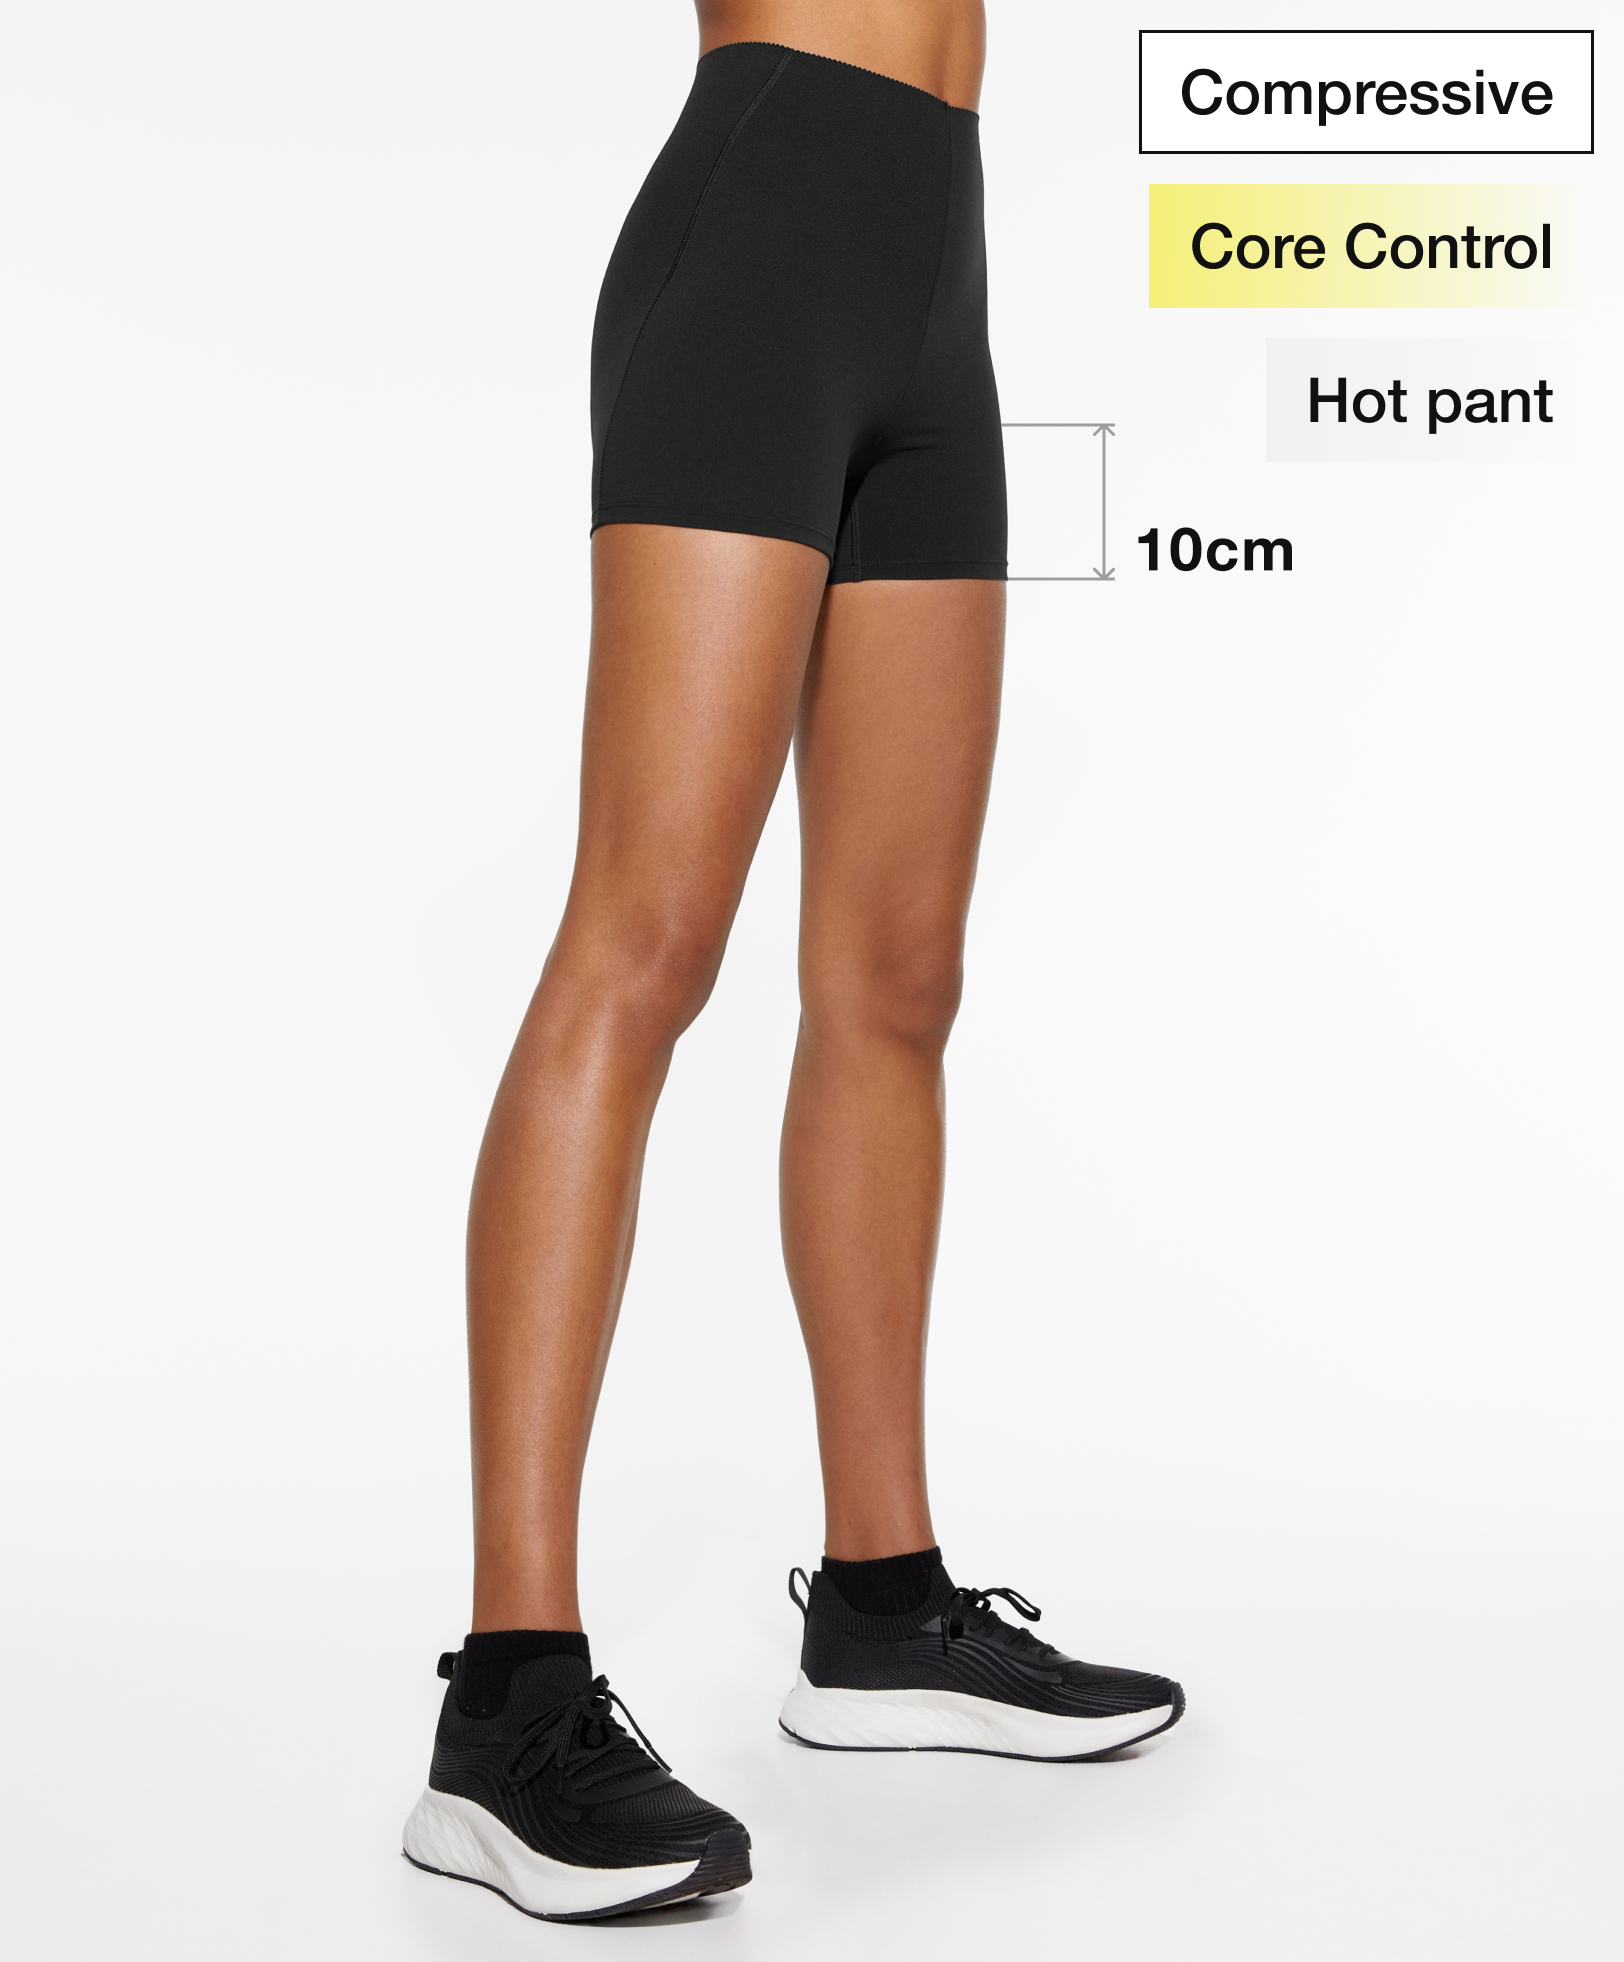 Hot pants compressive core control 10 cm